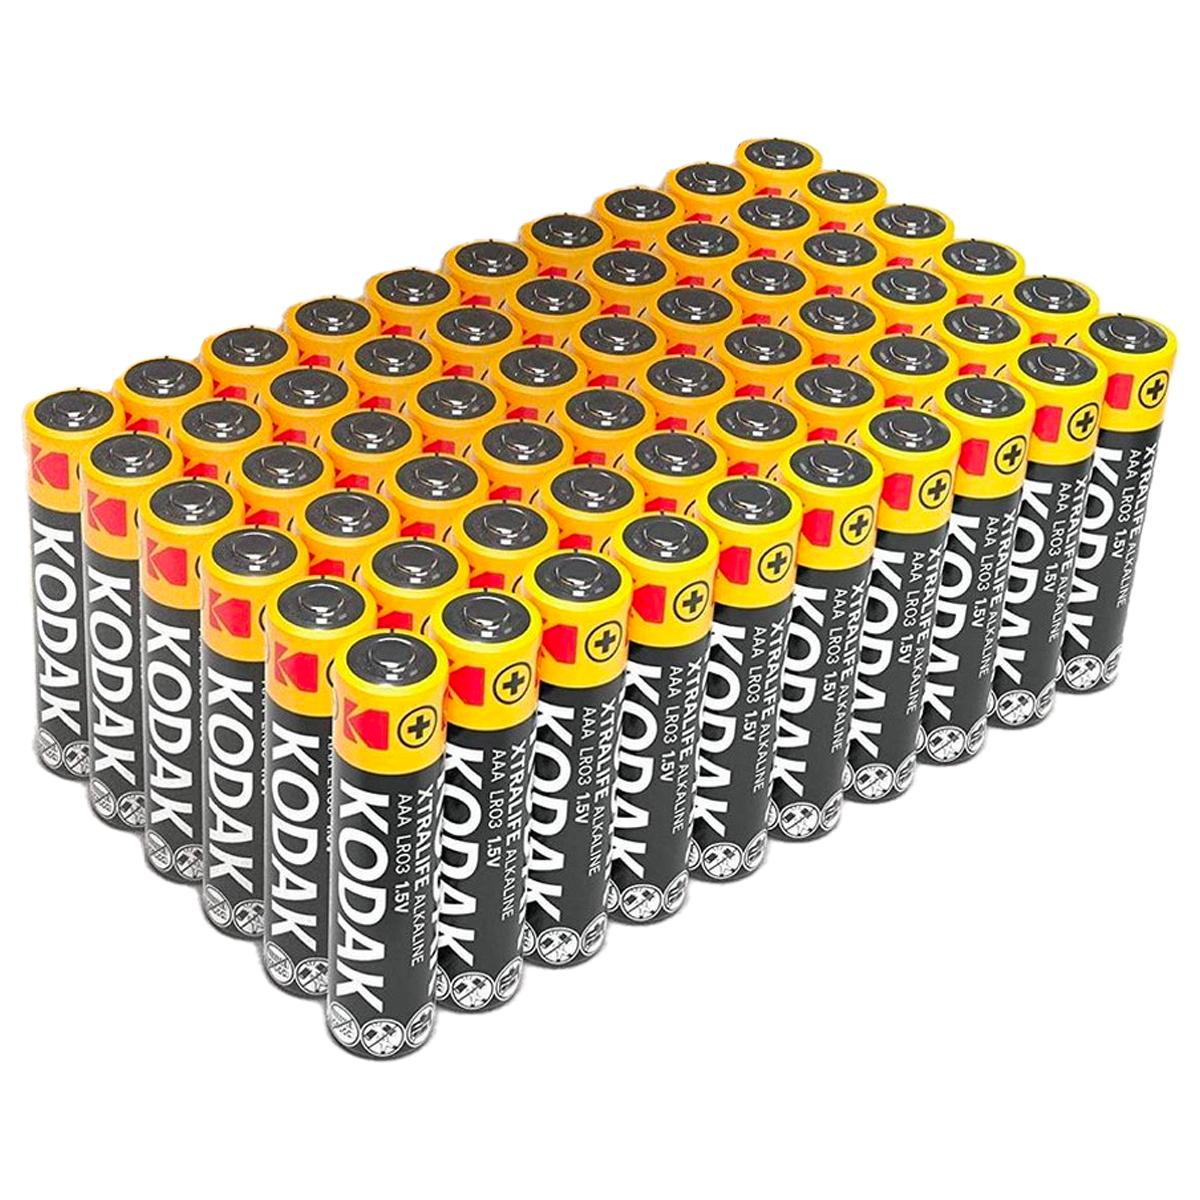 AAA Batterie Alkaline